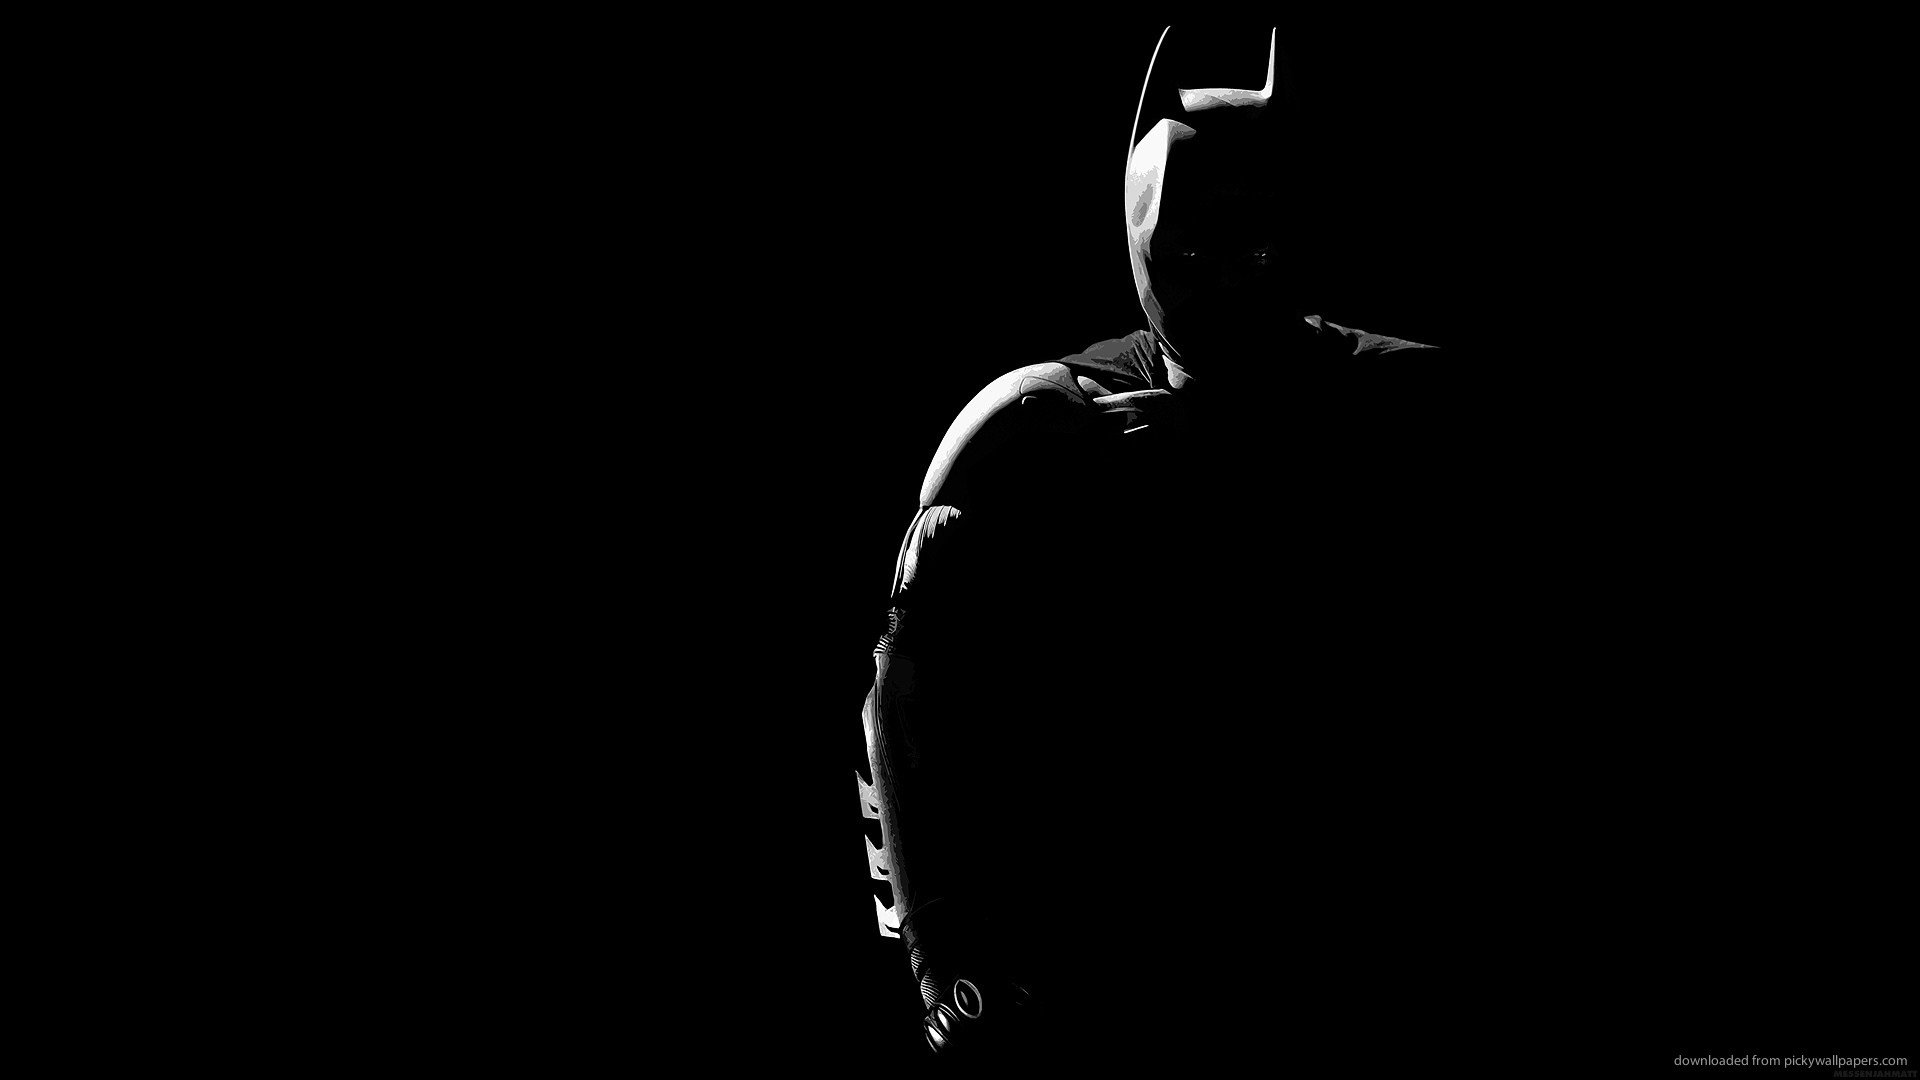 Batman silhouette picture